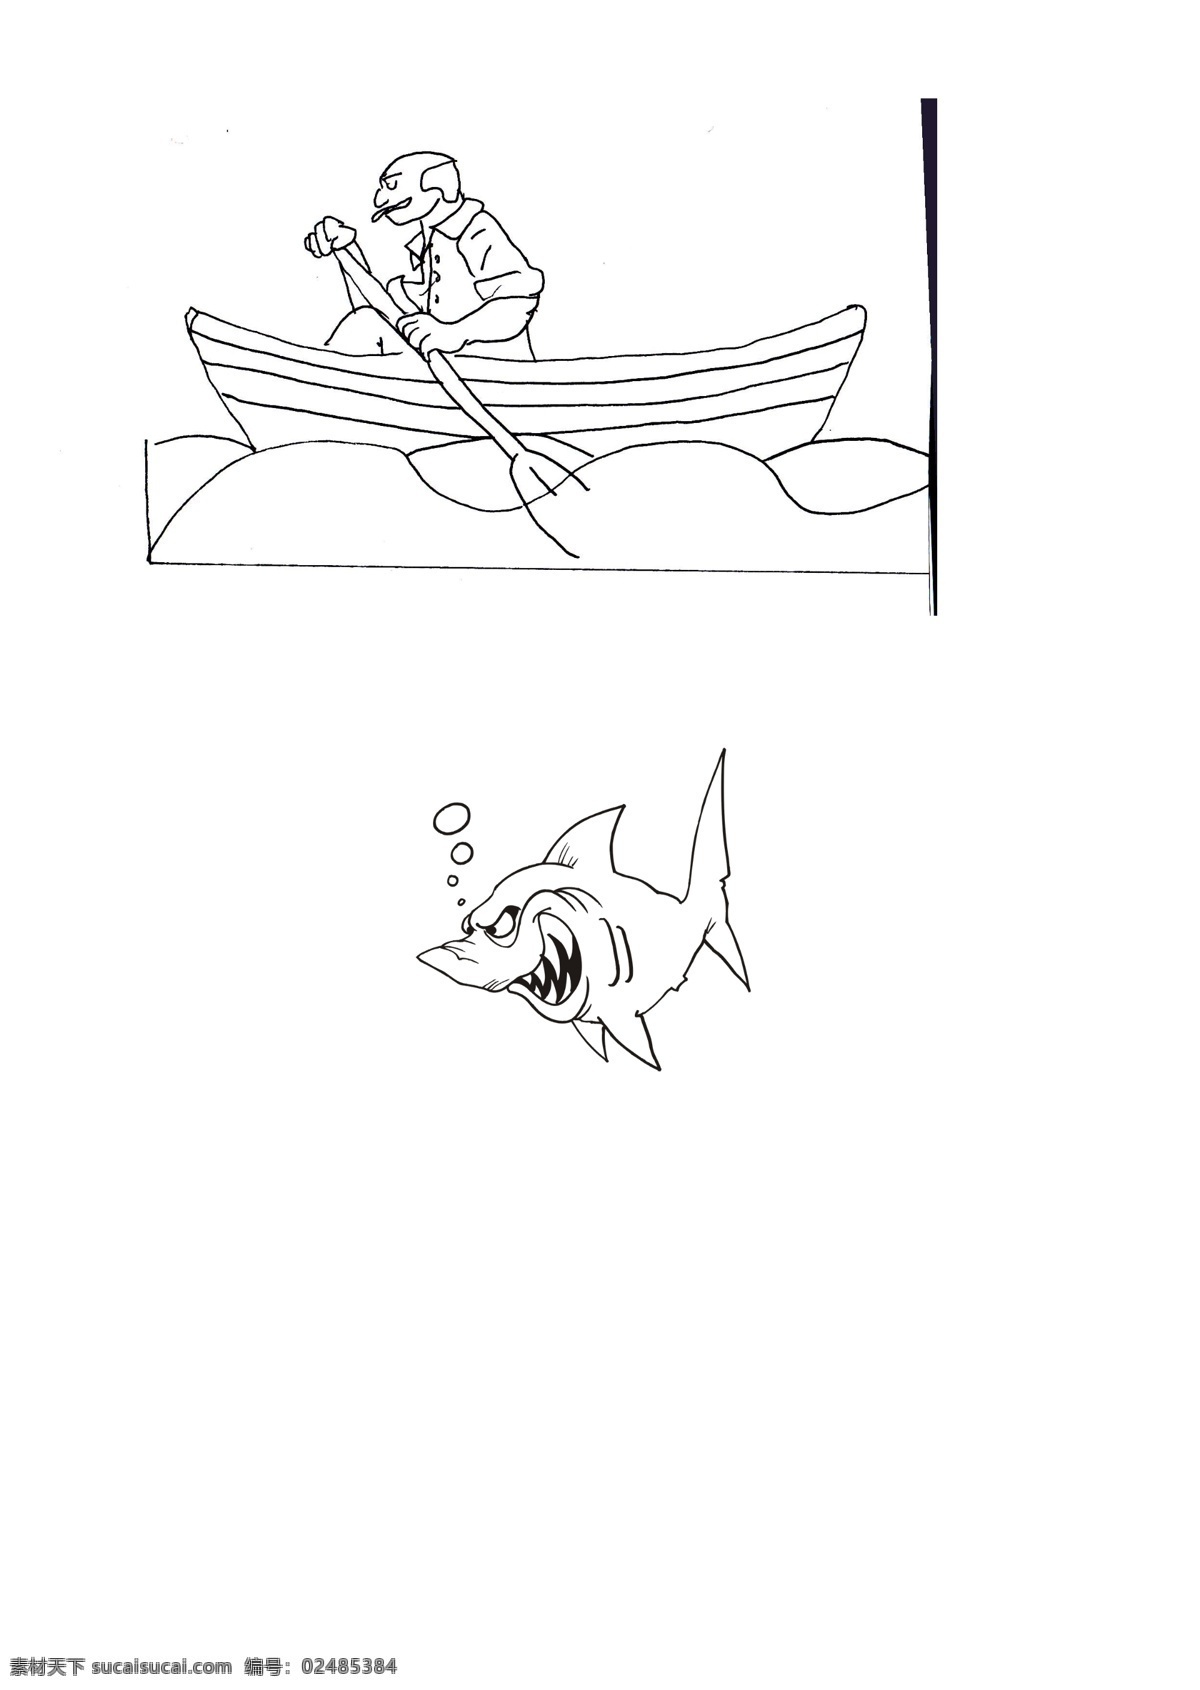 自动机 鲨鱼 攻击 玩具 lasercut sldprt 灰色